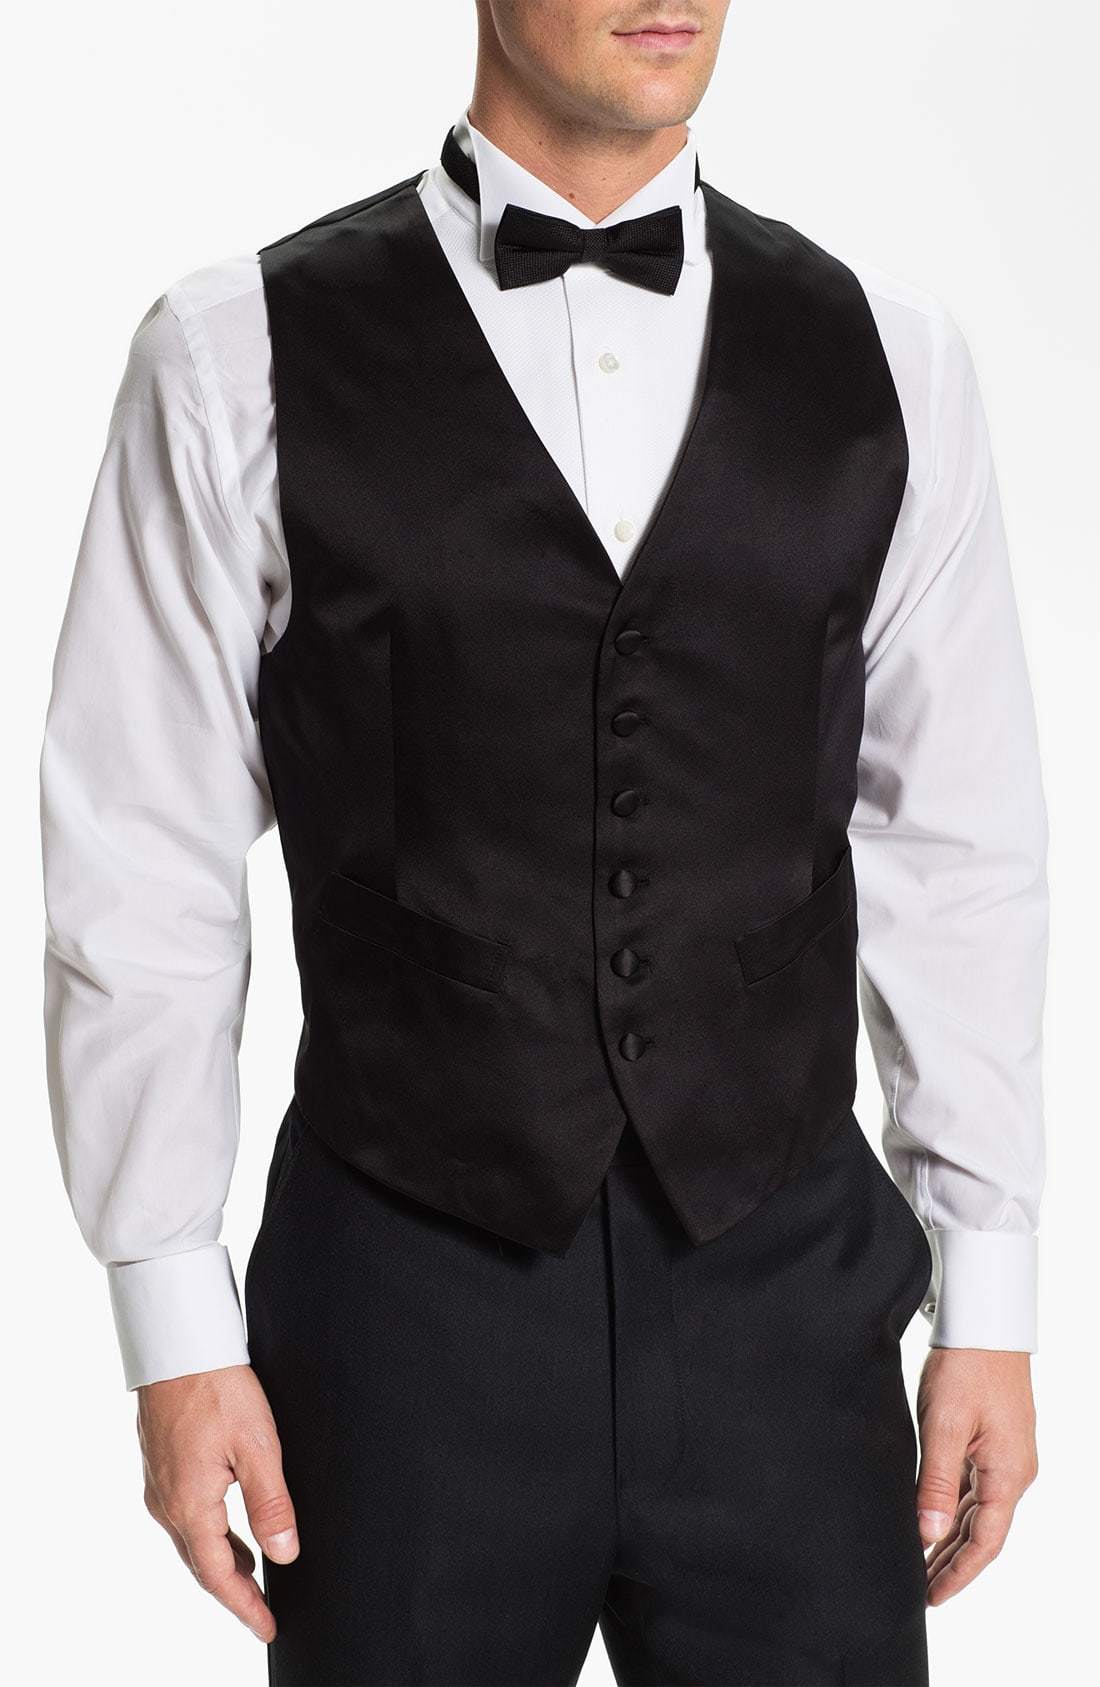 https://cdn.lookastic.com/black-waistcoat/silk-vest-original-8923406.jpg